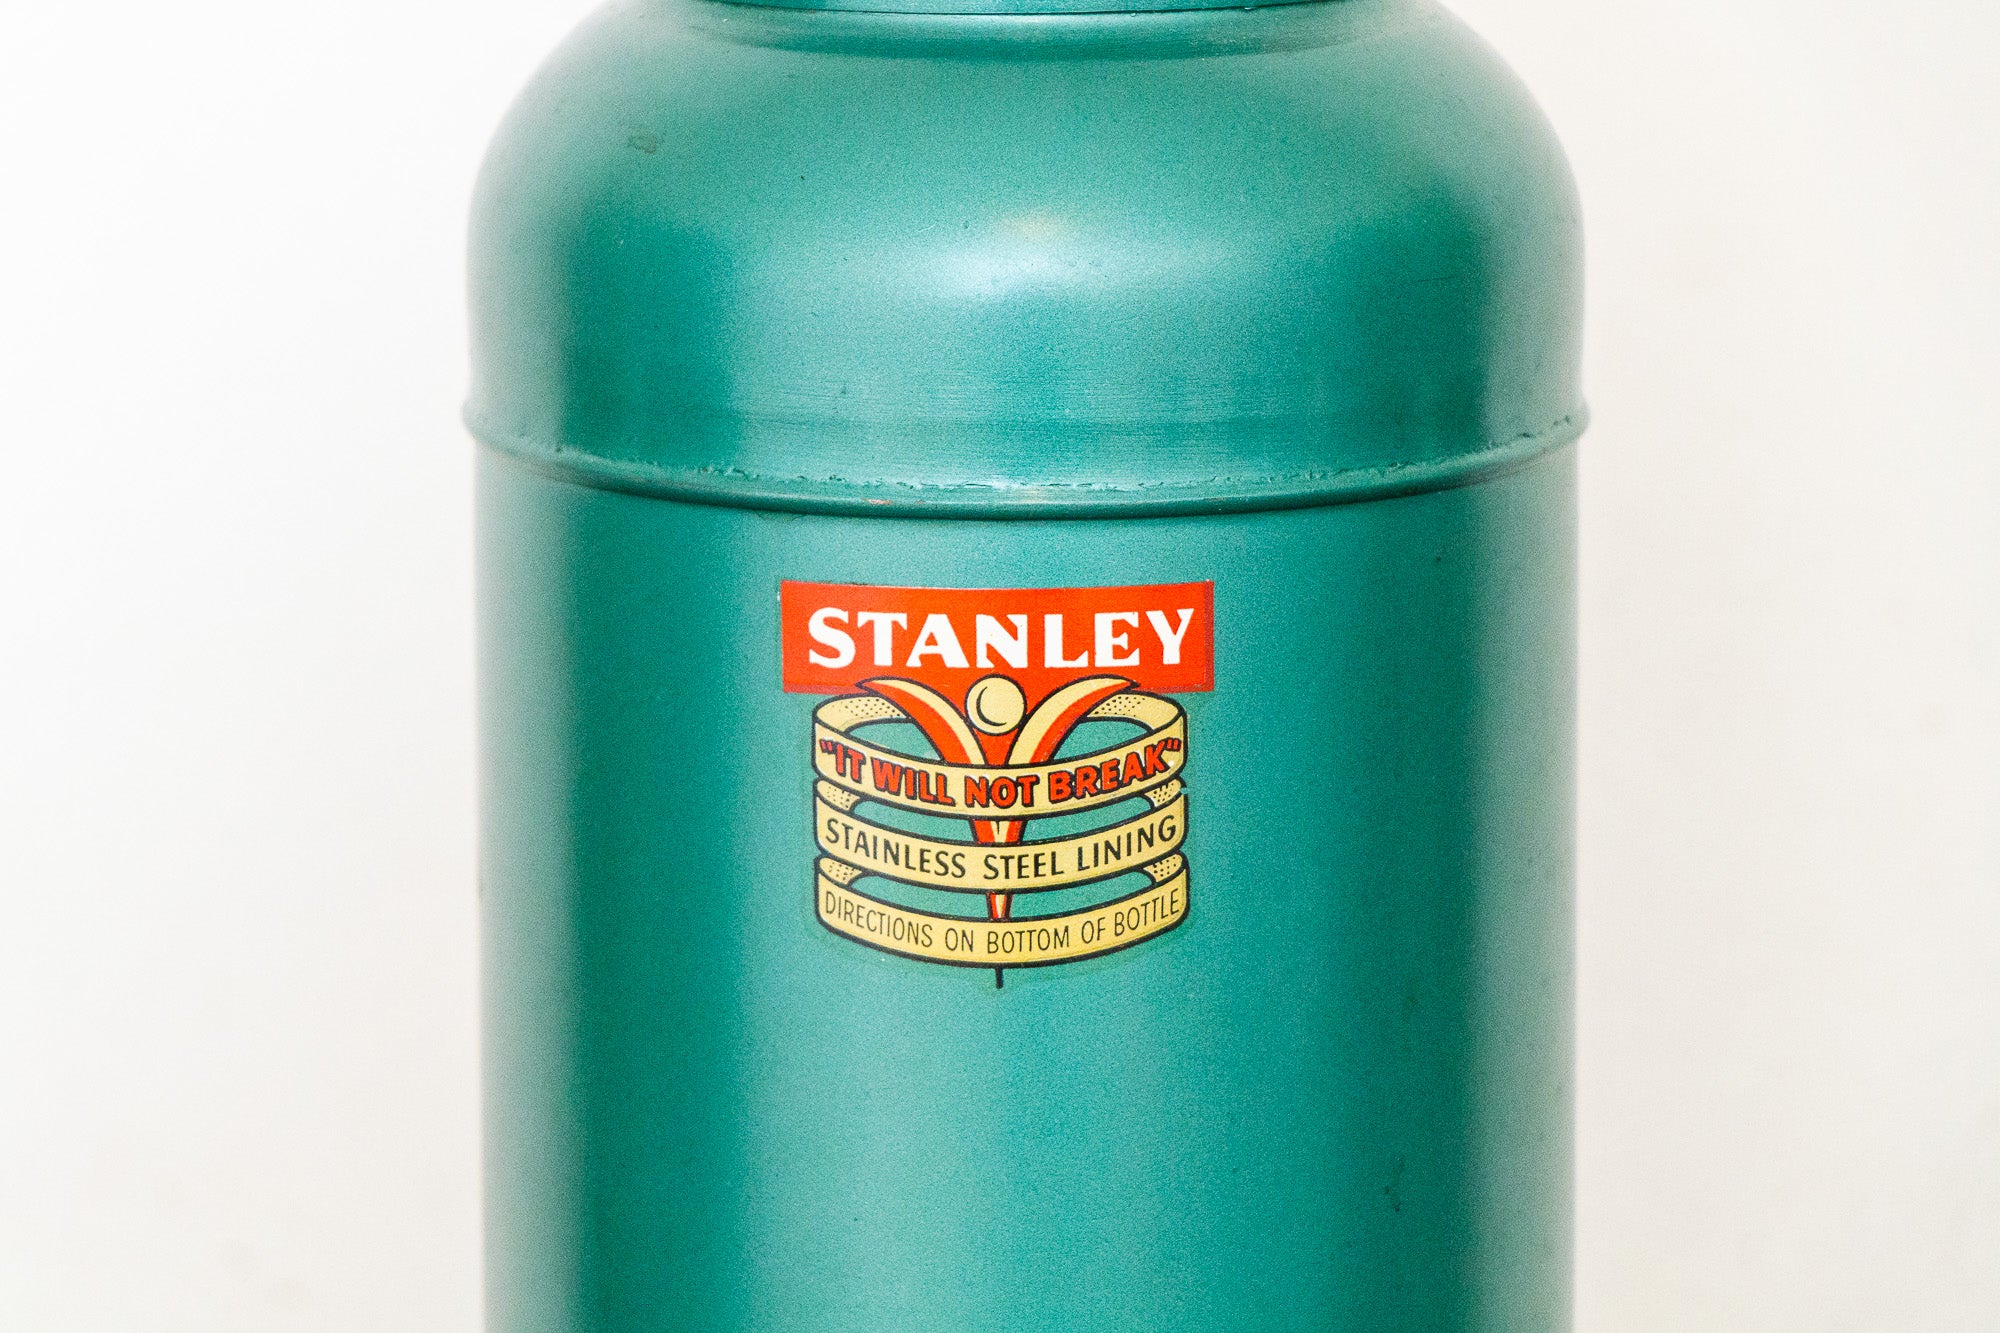 Vintage Stanley dark green thermos